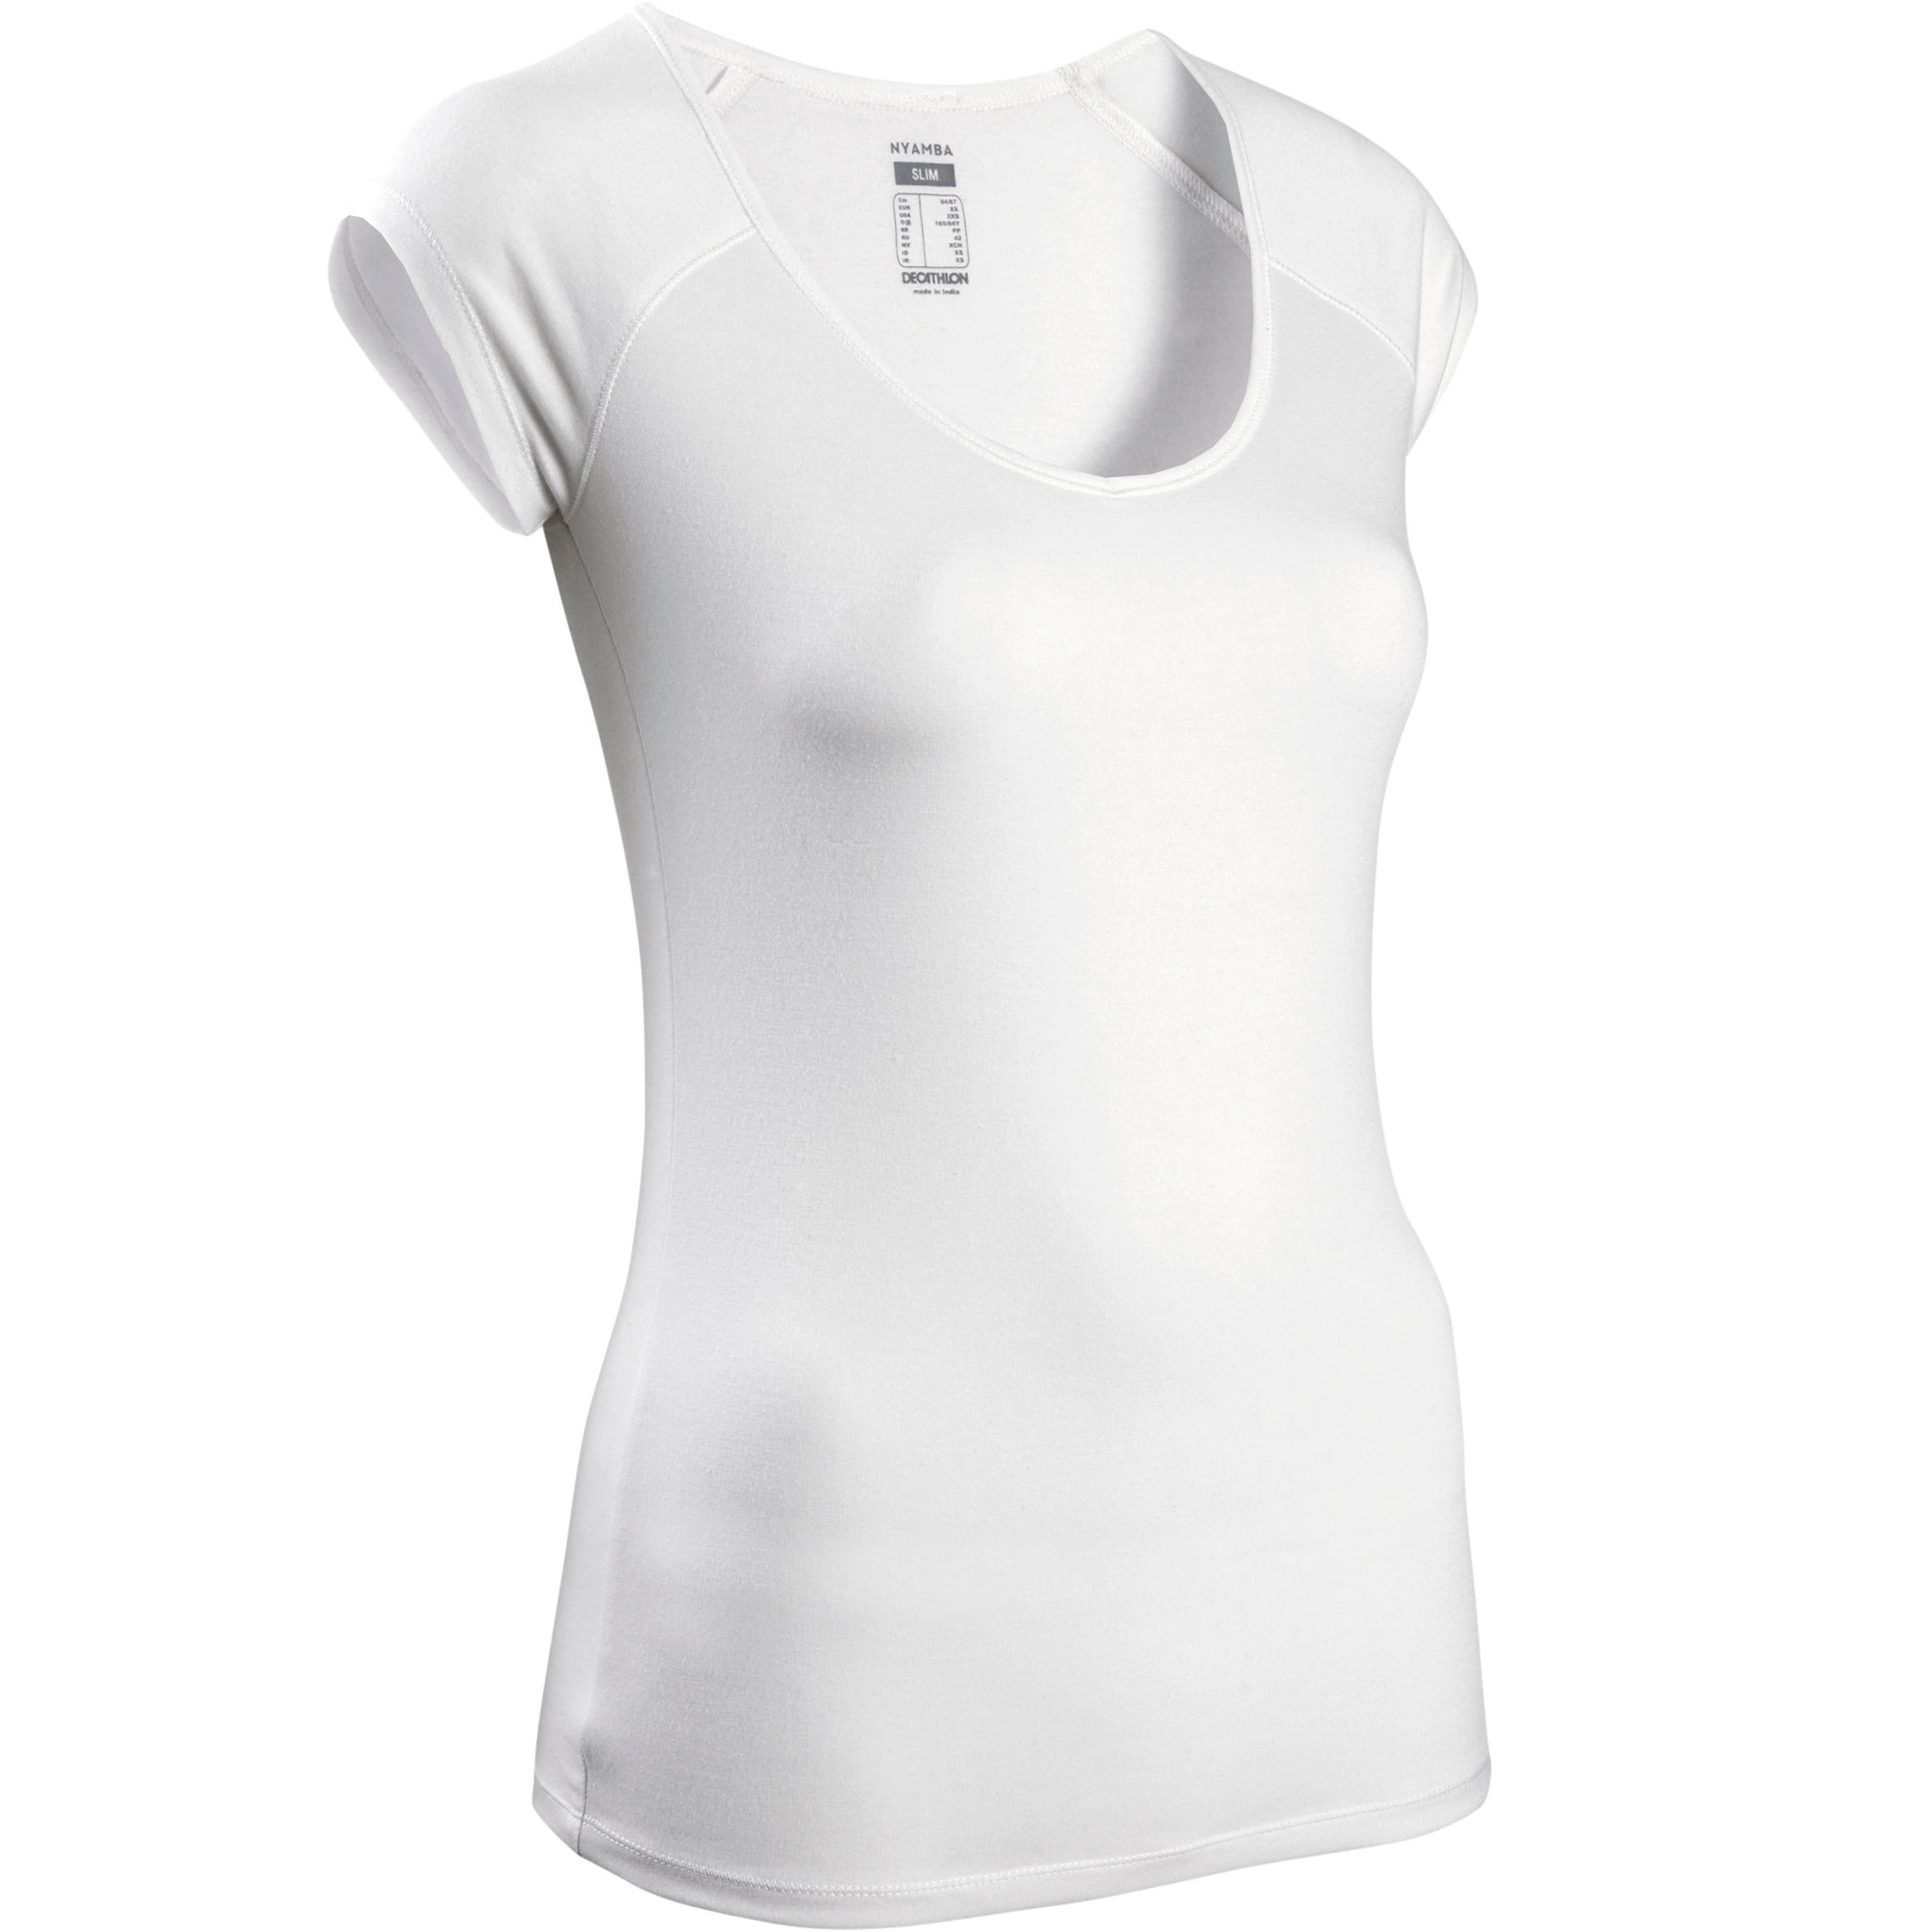 NYAMBA Women's Slim T-Shirt 500 - White